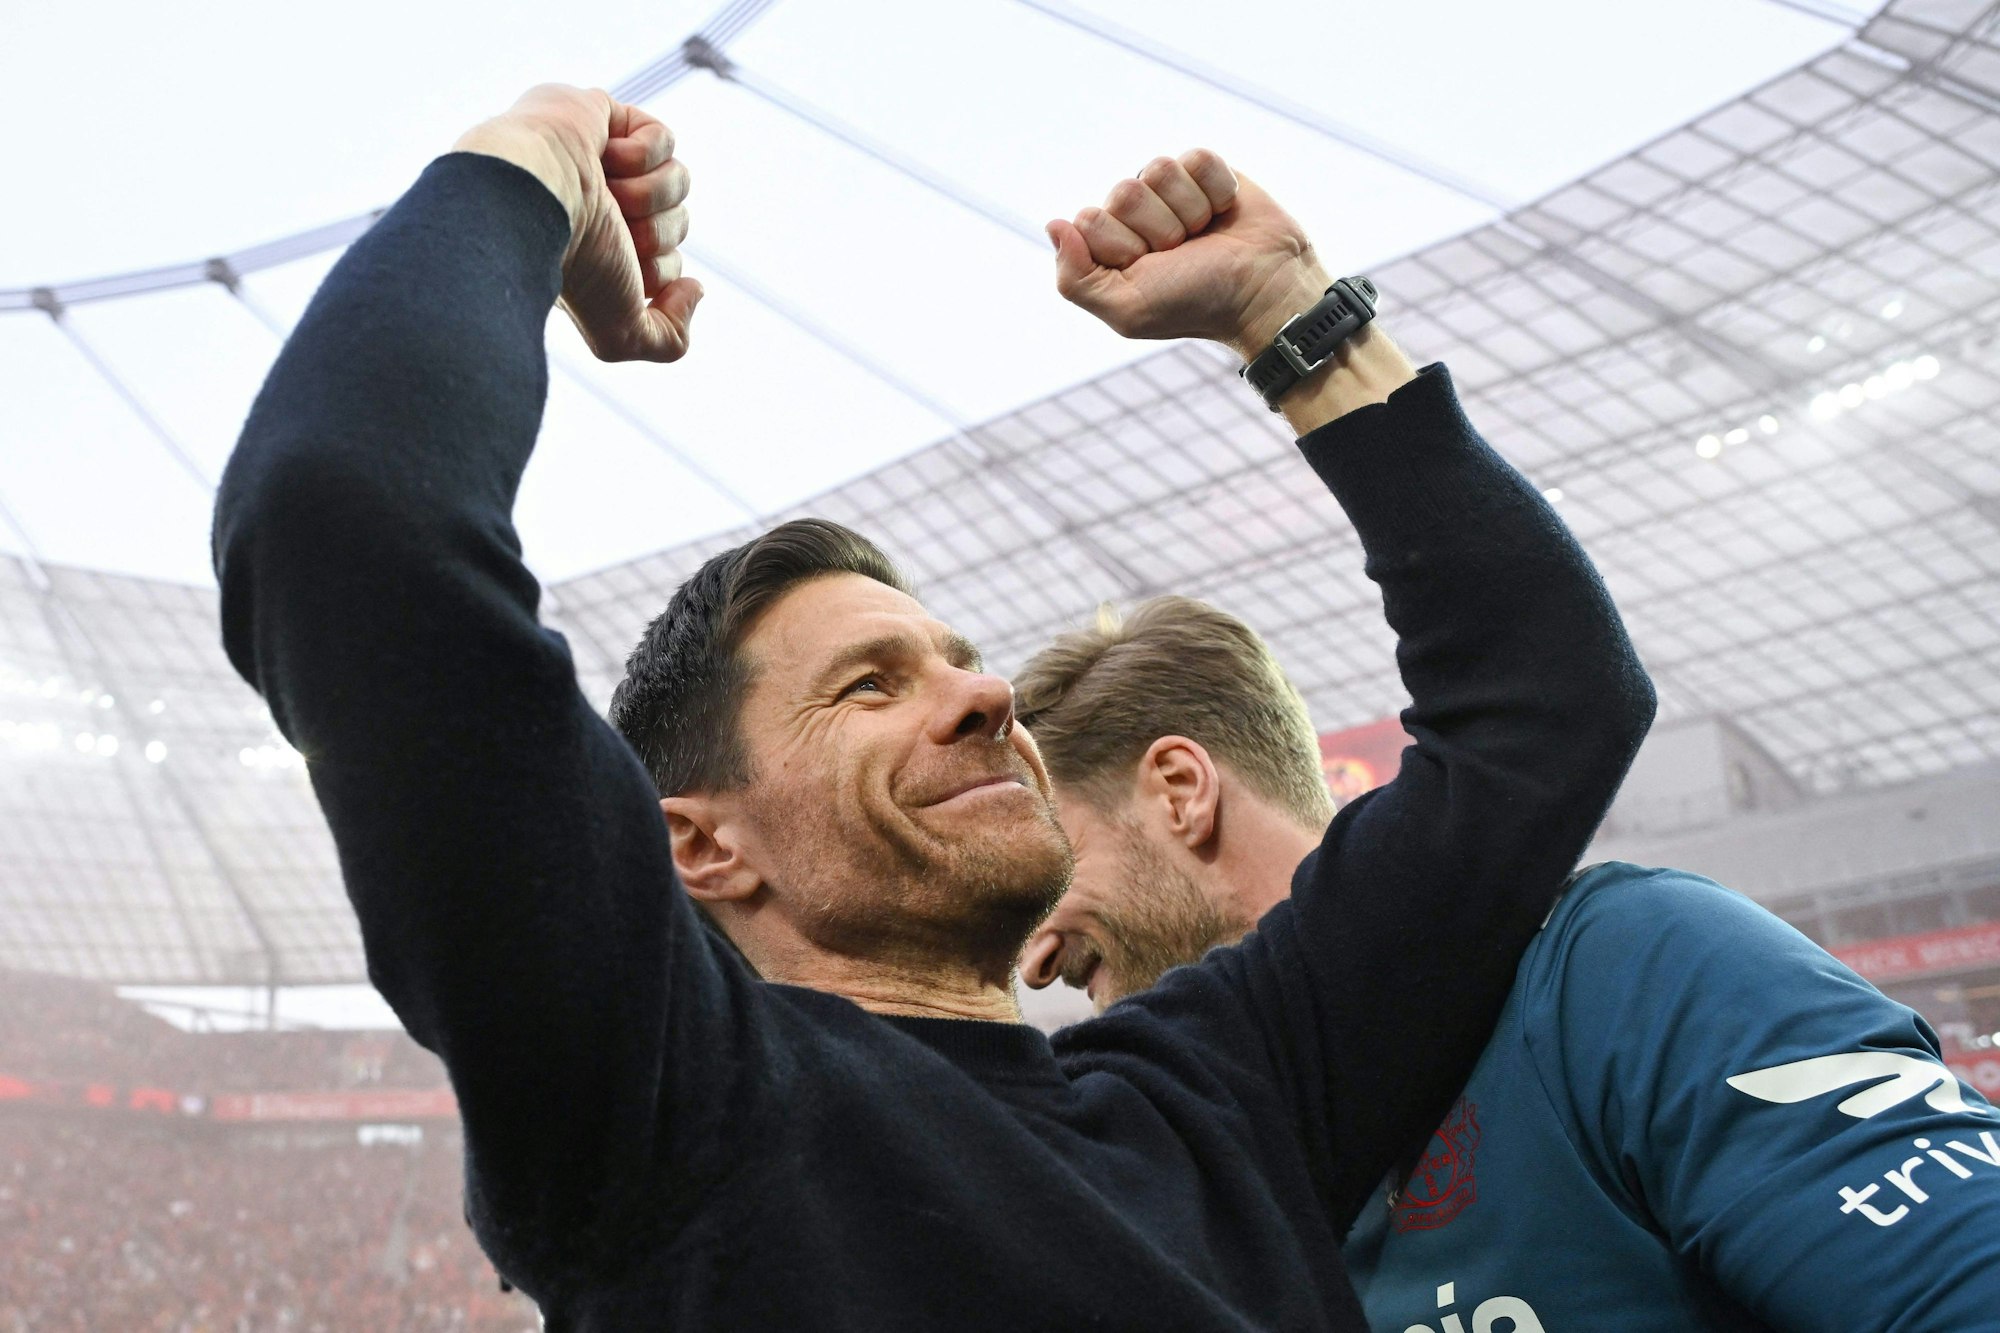 Xabi Alonso hat Bayer Leverkusen aus den Tiefes des Abstiegskampfes zur Deutschen Meisterschaft geführt. Wie tickt der Baske privat?